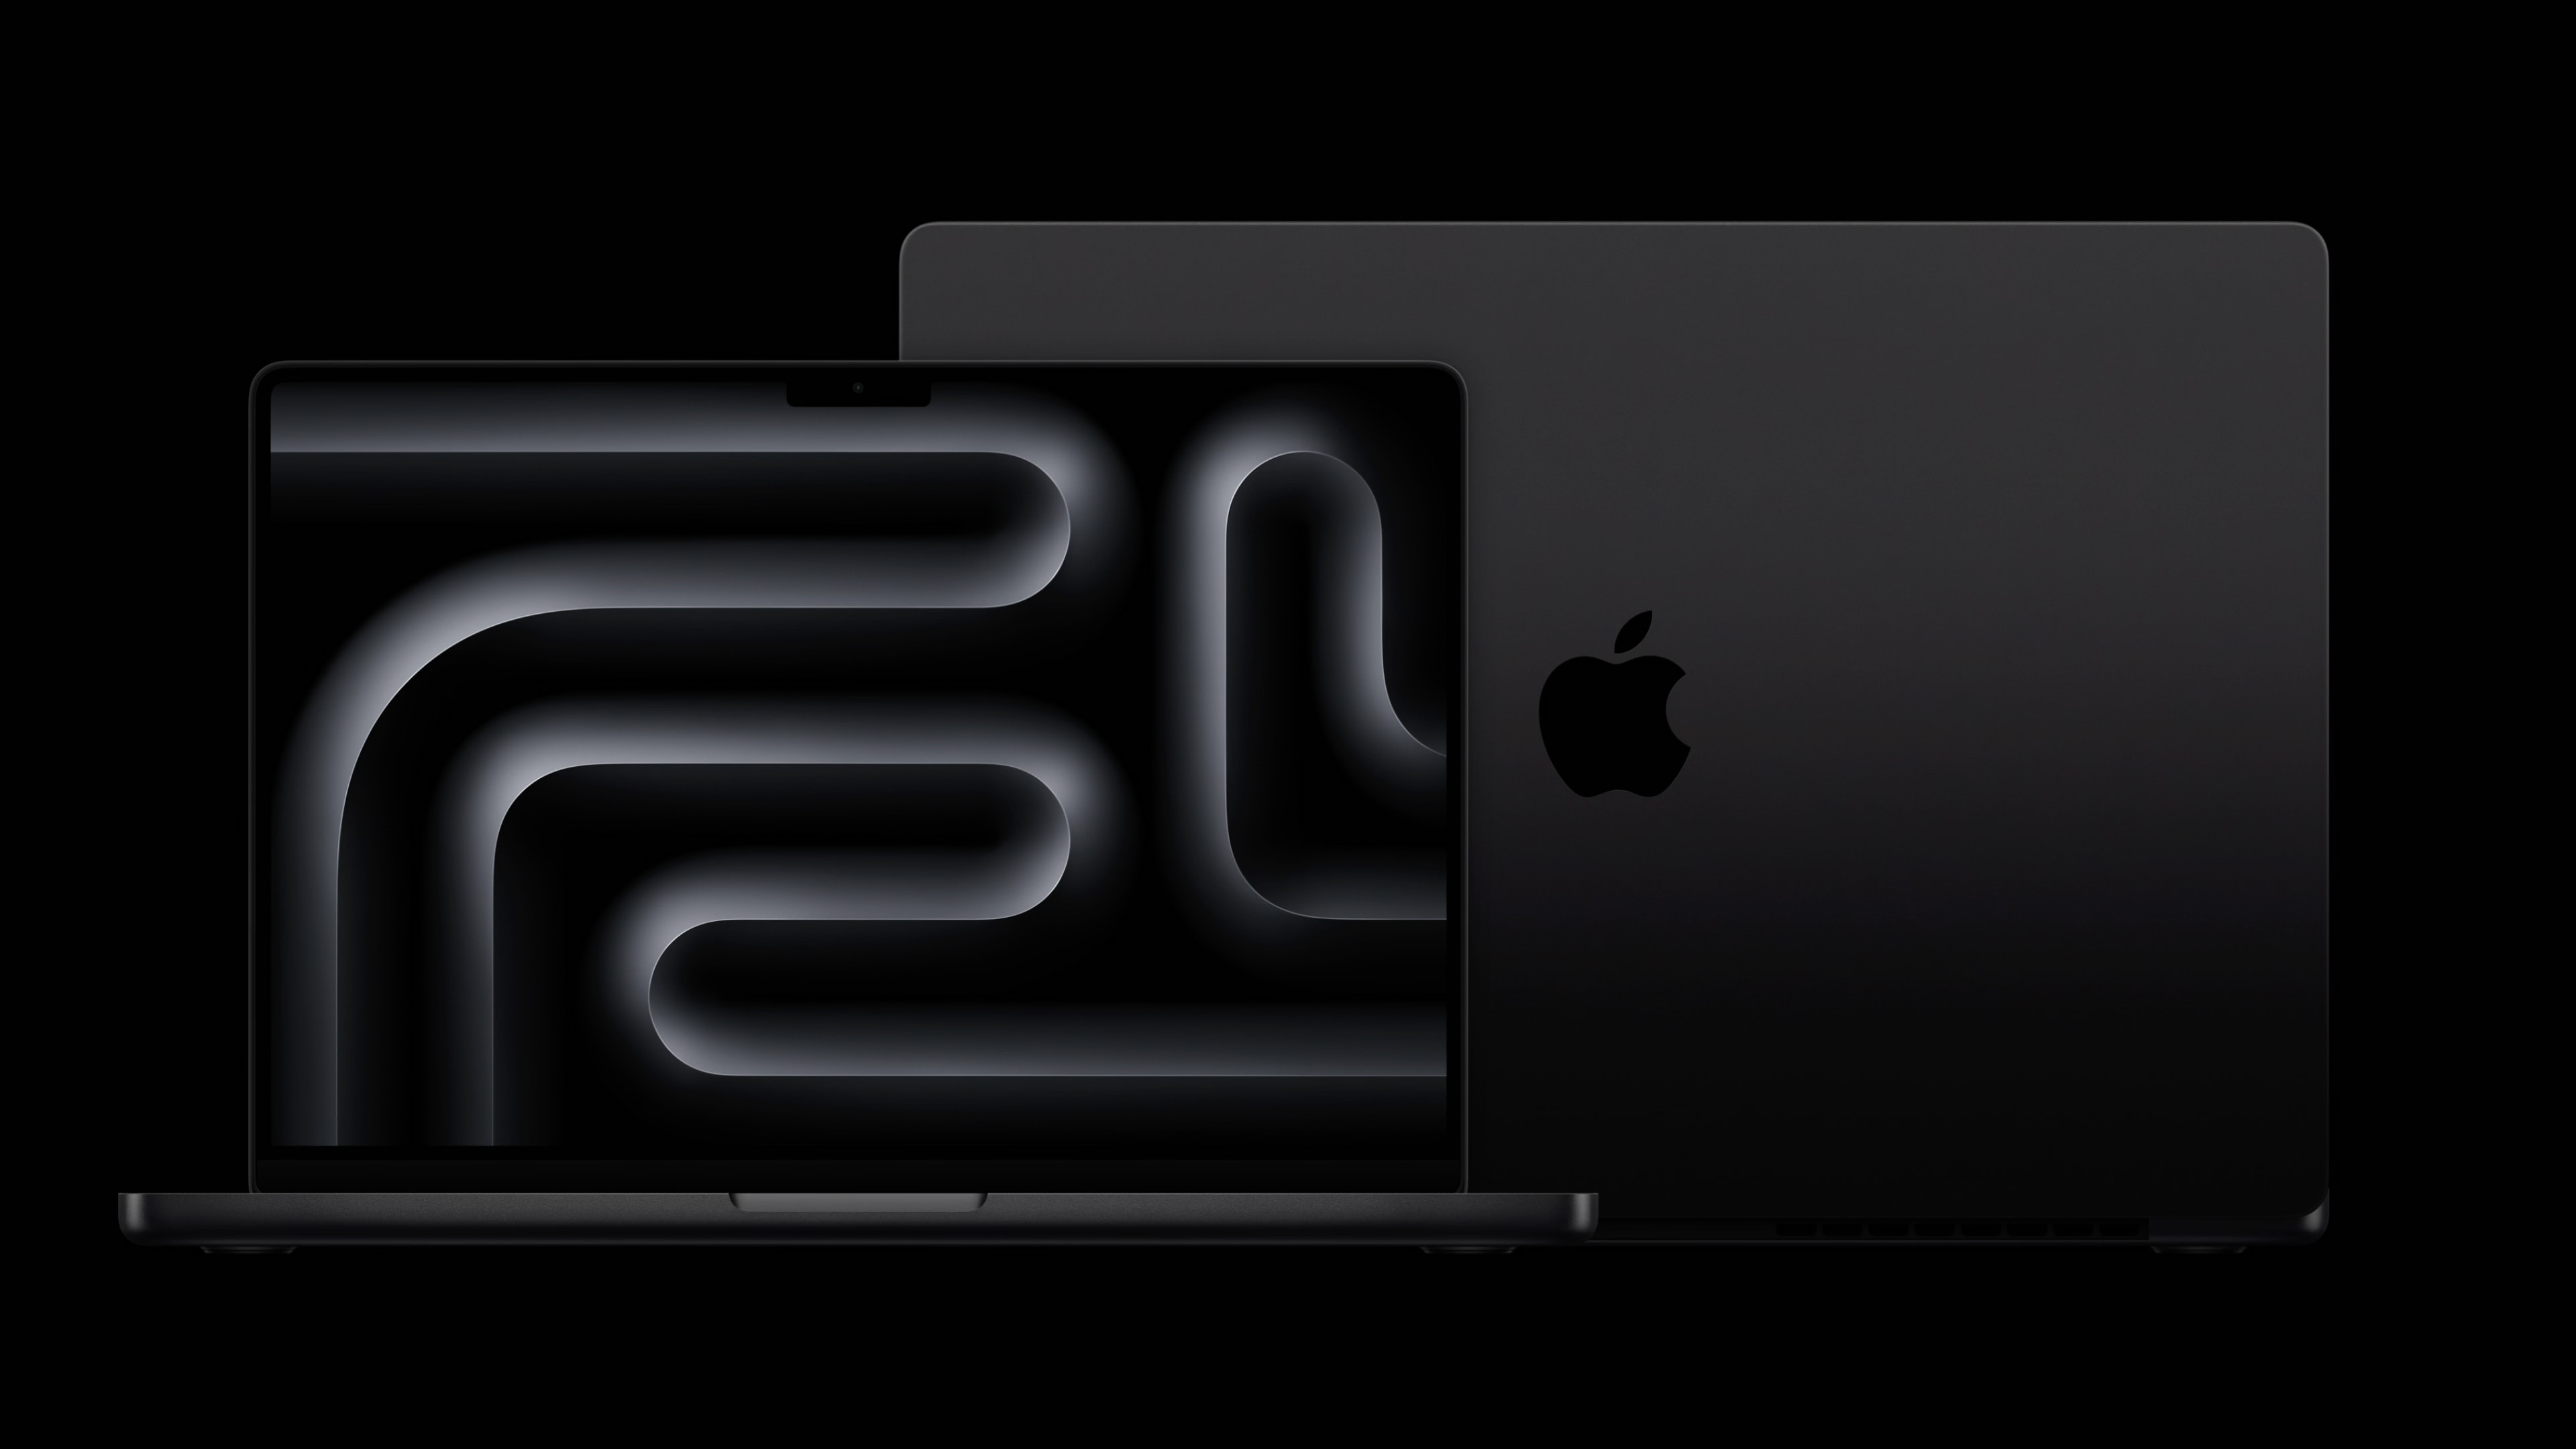 Apple’s new MacBook Pro.Source: Apple